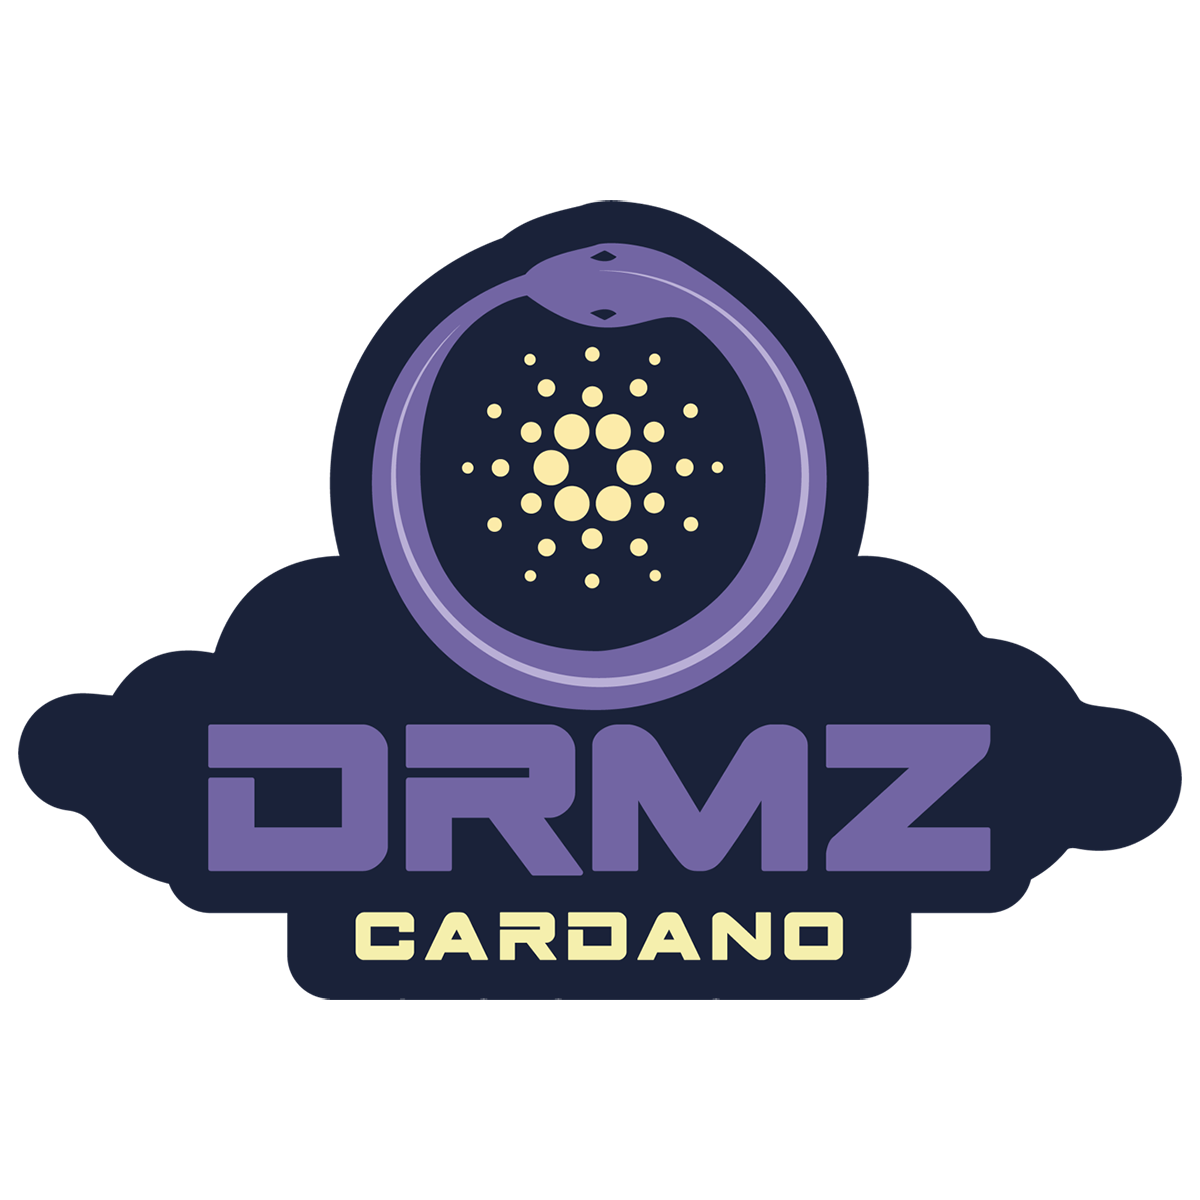 DRMZ Cardano Stakepool